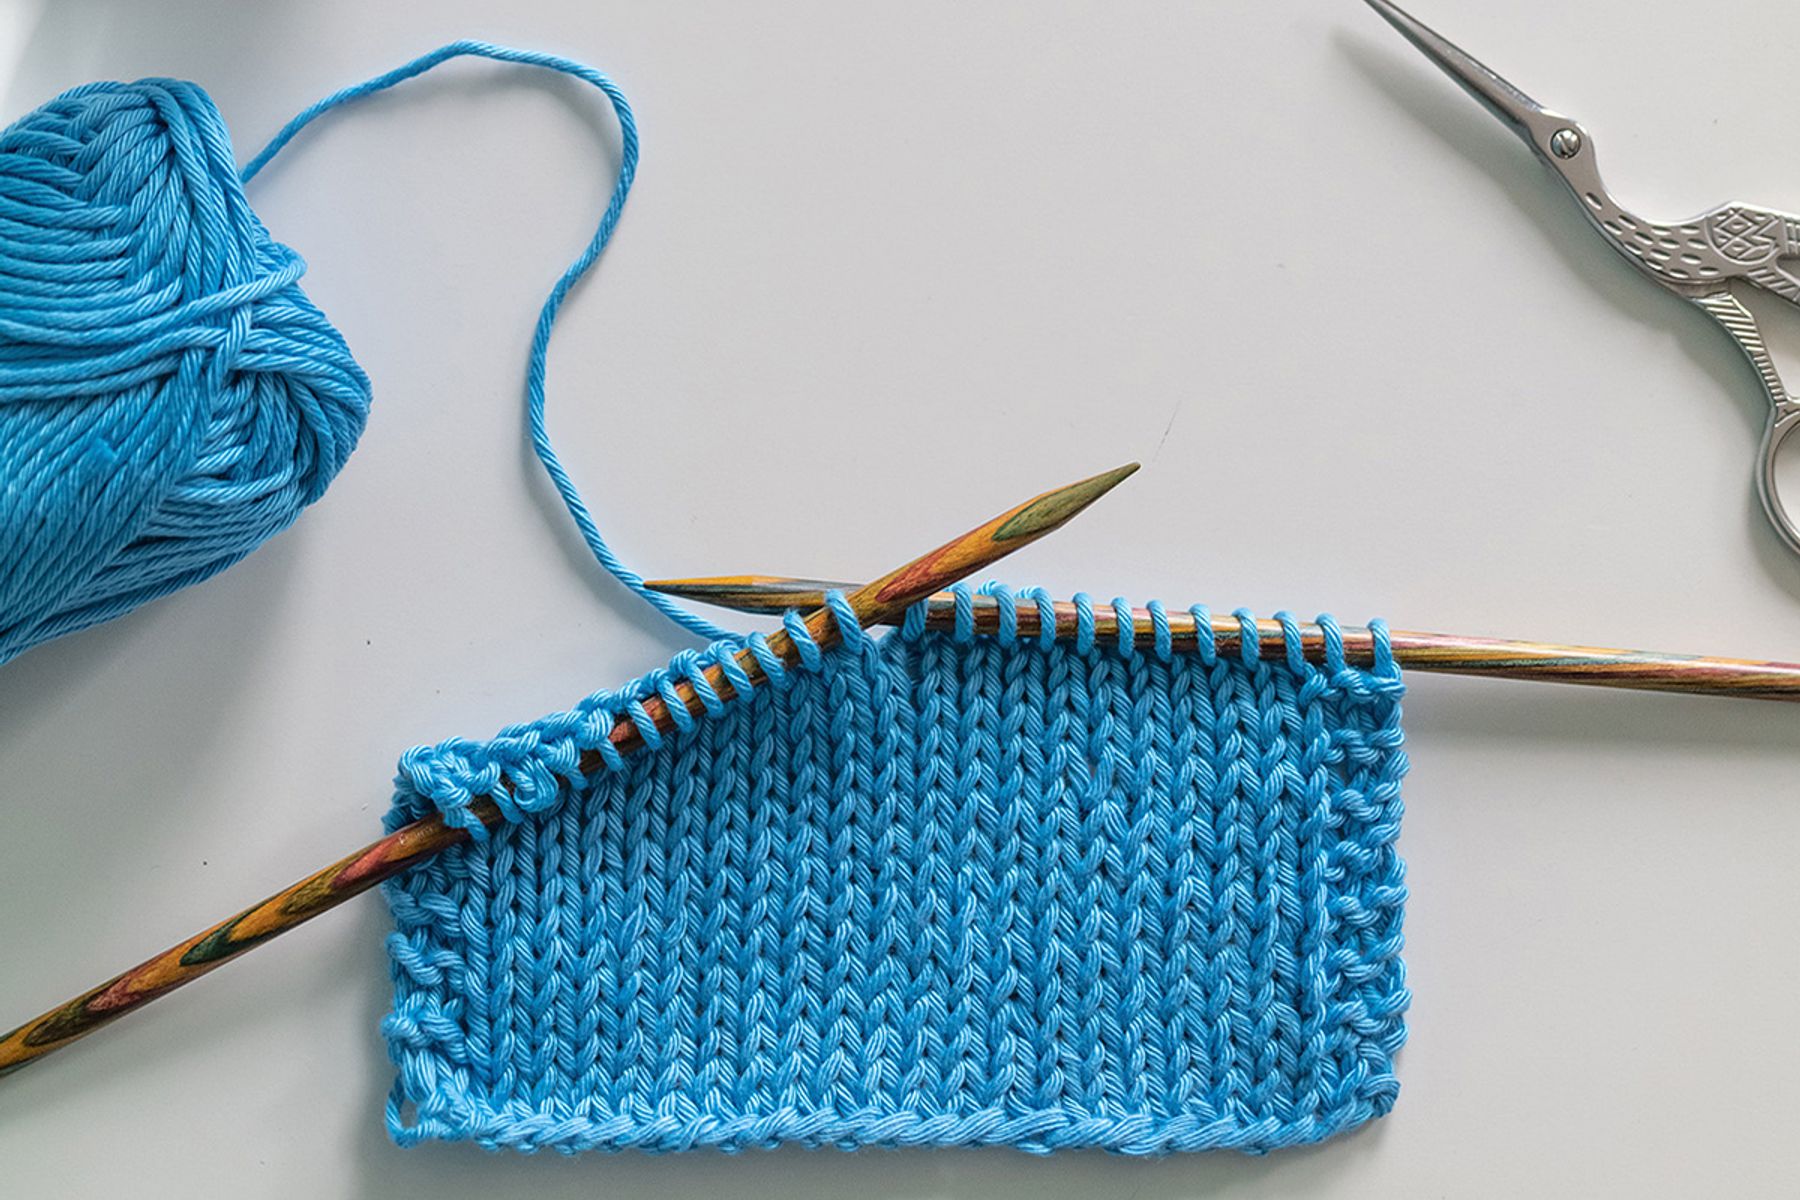 Hướng dẫn chi tiết cách đan len cho người mới bắt đầu chuẩn nhất